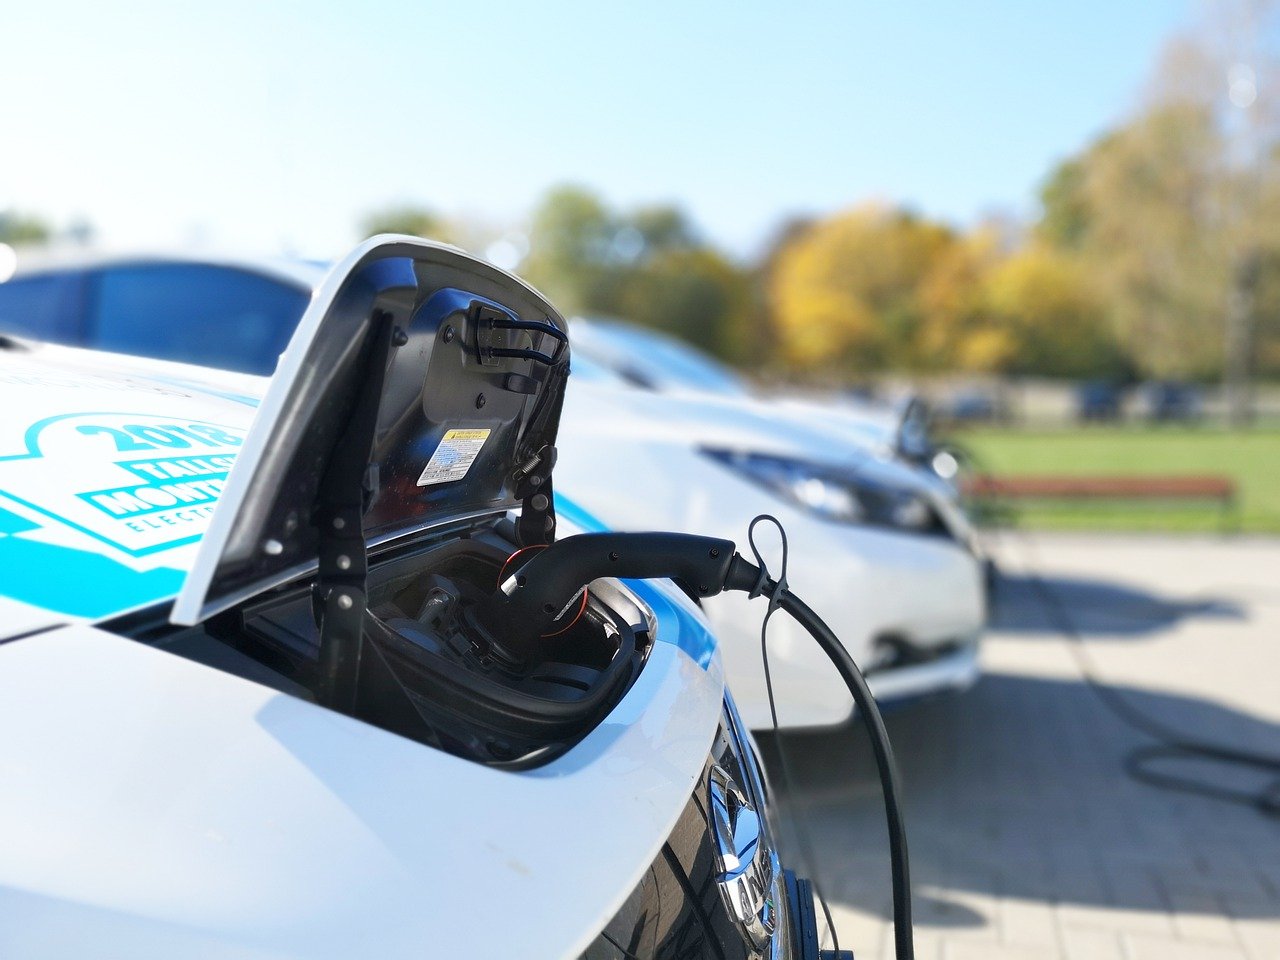 Nissan encuentra nuevos usos para baterías agotadas en vehículos eléctricos [video]